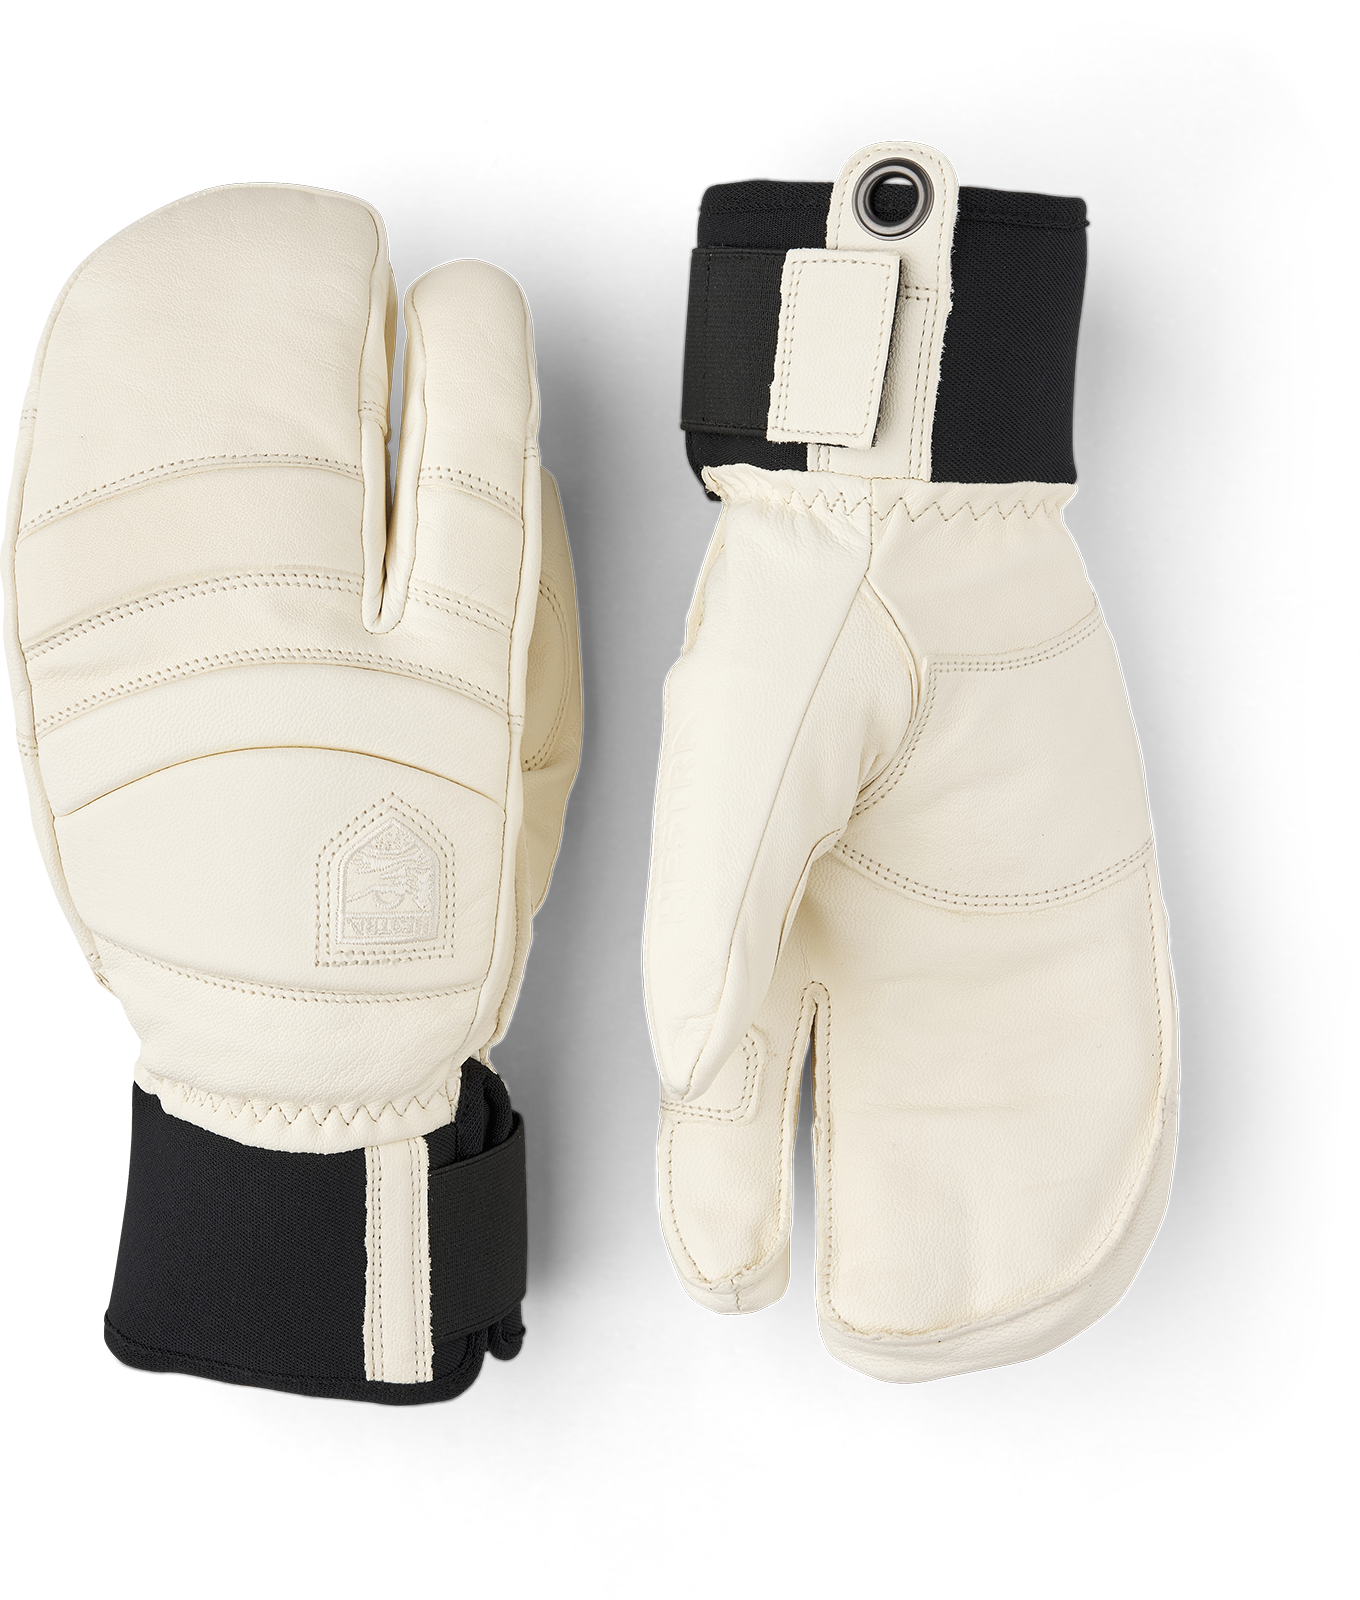 Fall Line 3-finger - Almond White | Hestra Gloves